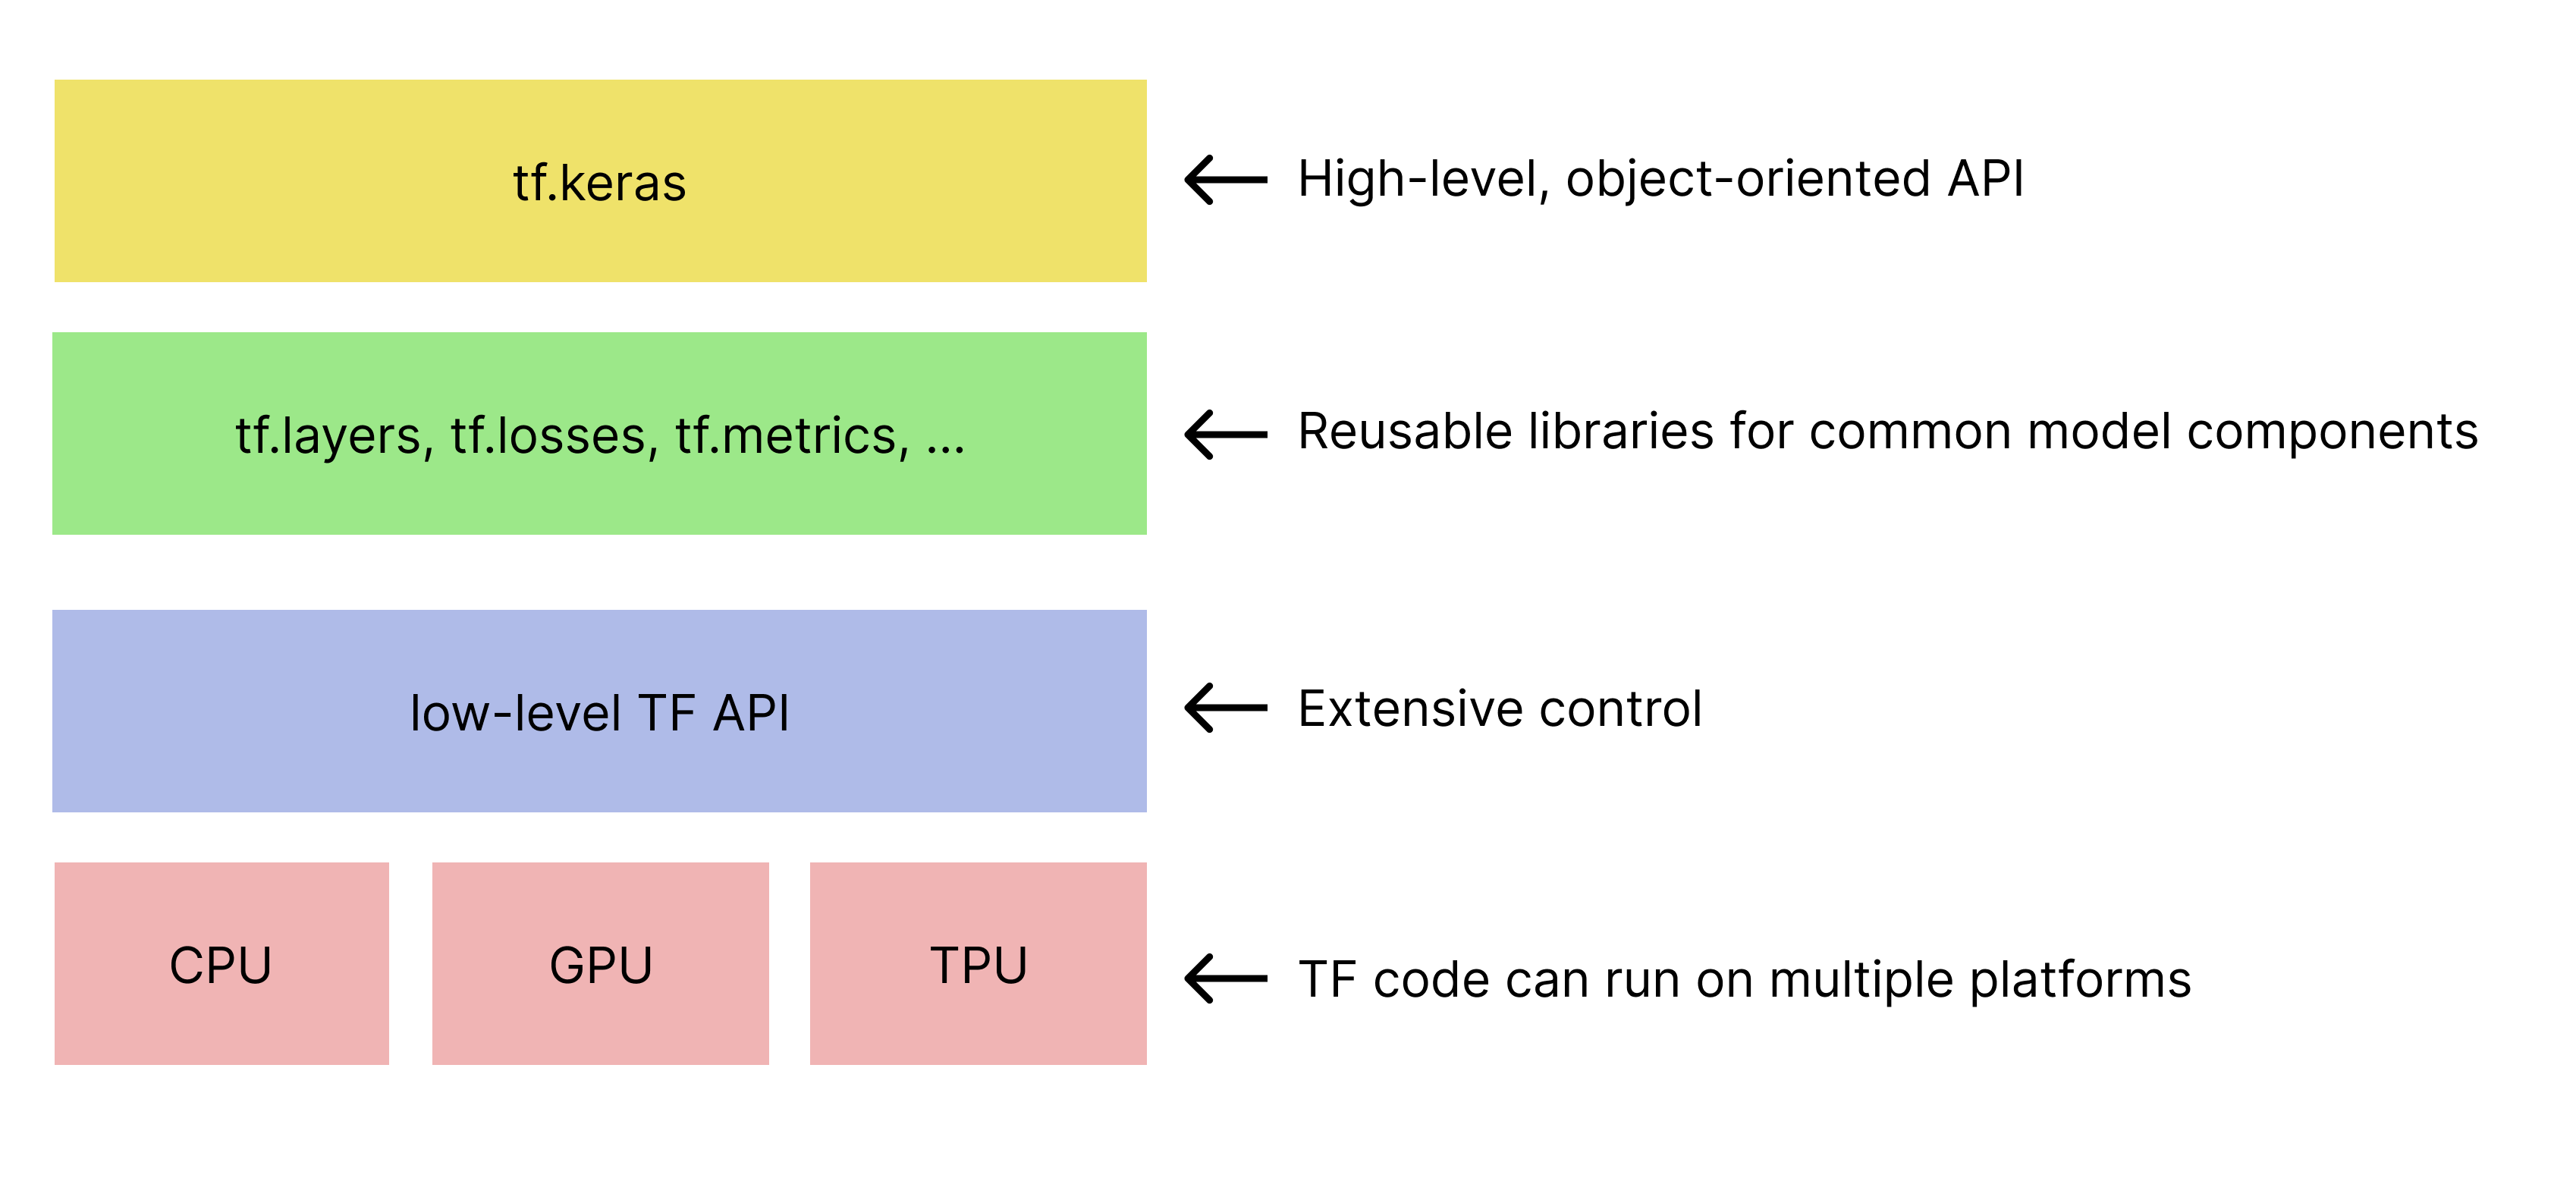 TensorFlow टूलकिट का आसान क्रम. 
   tf.keras API सबसे ऊपर मौजूद है.